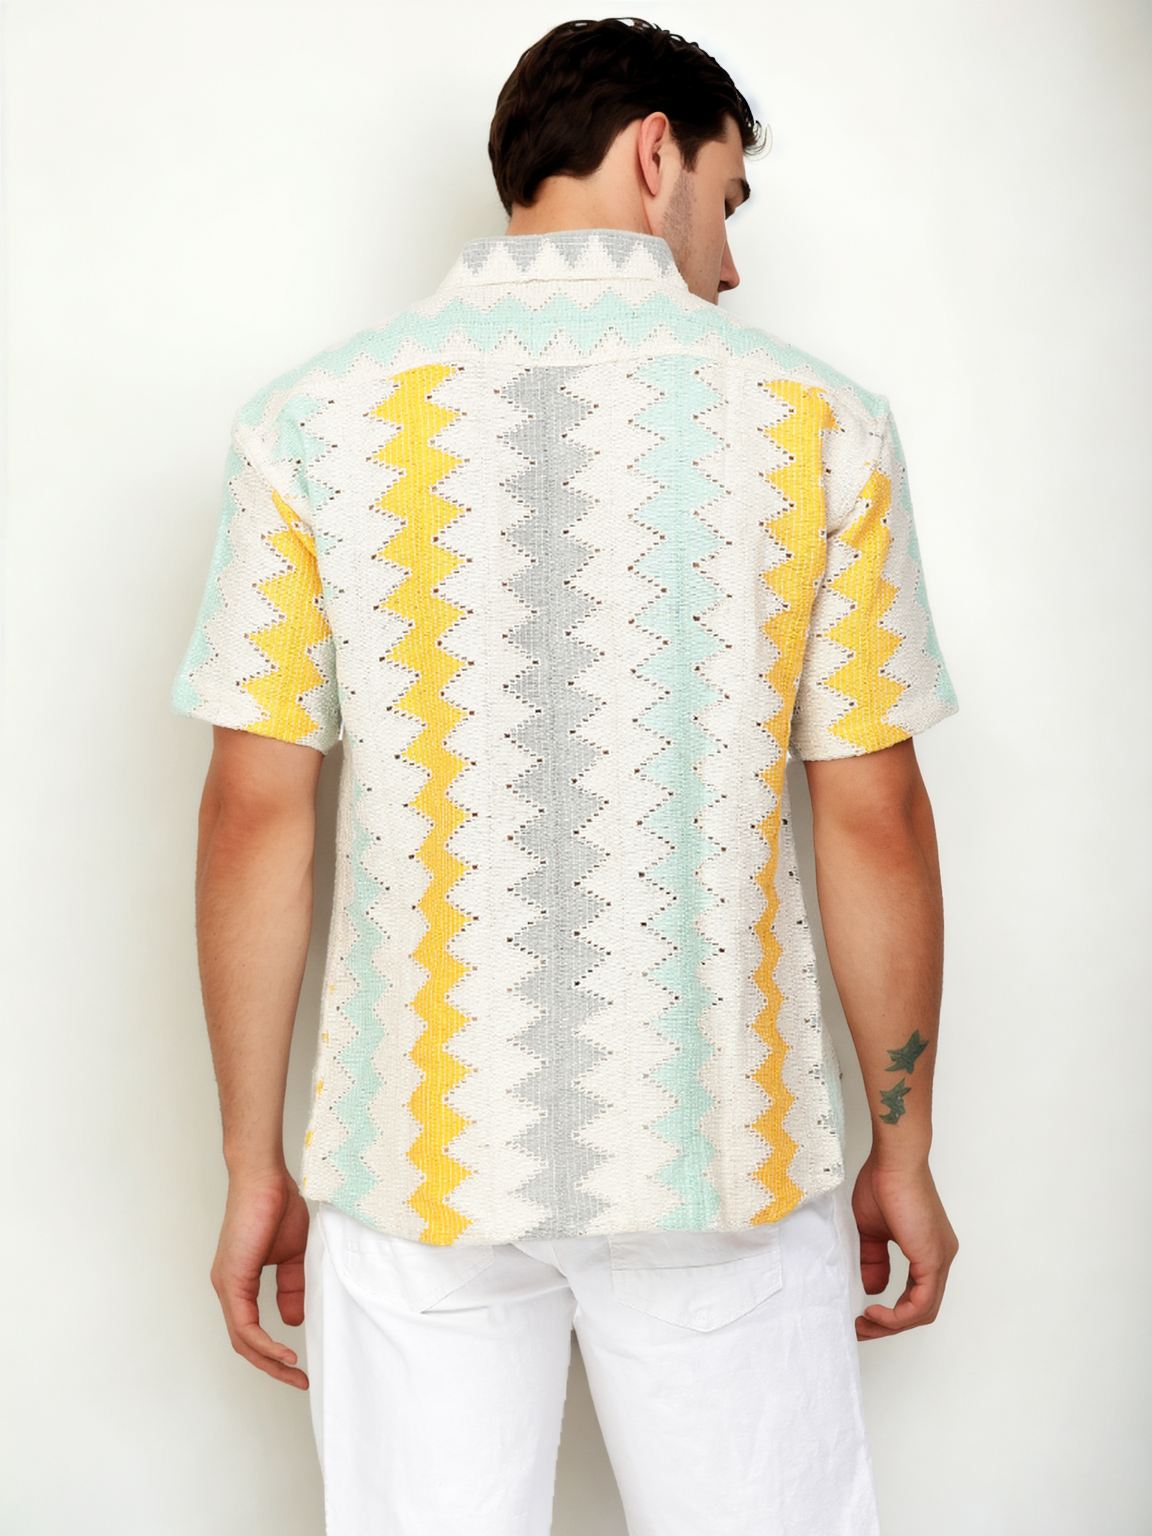 Hemsters Threaded Crochet Shirt Multi Color Shirt